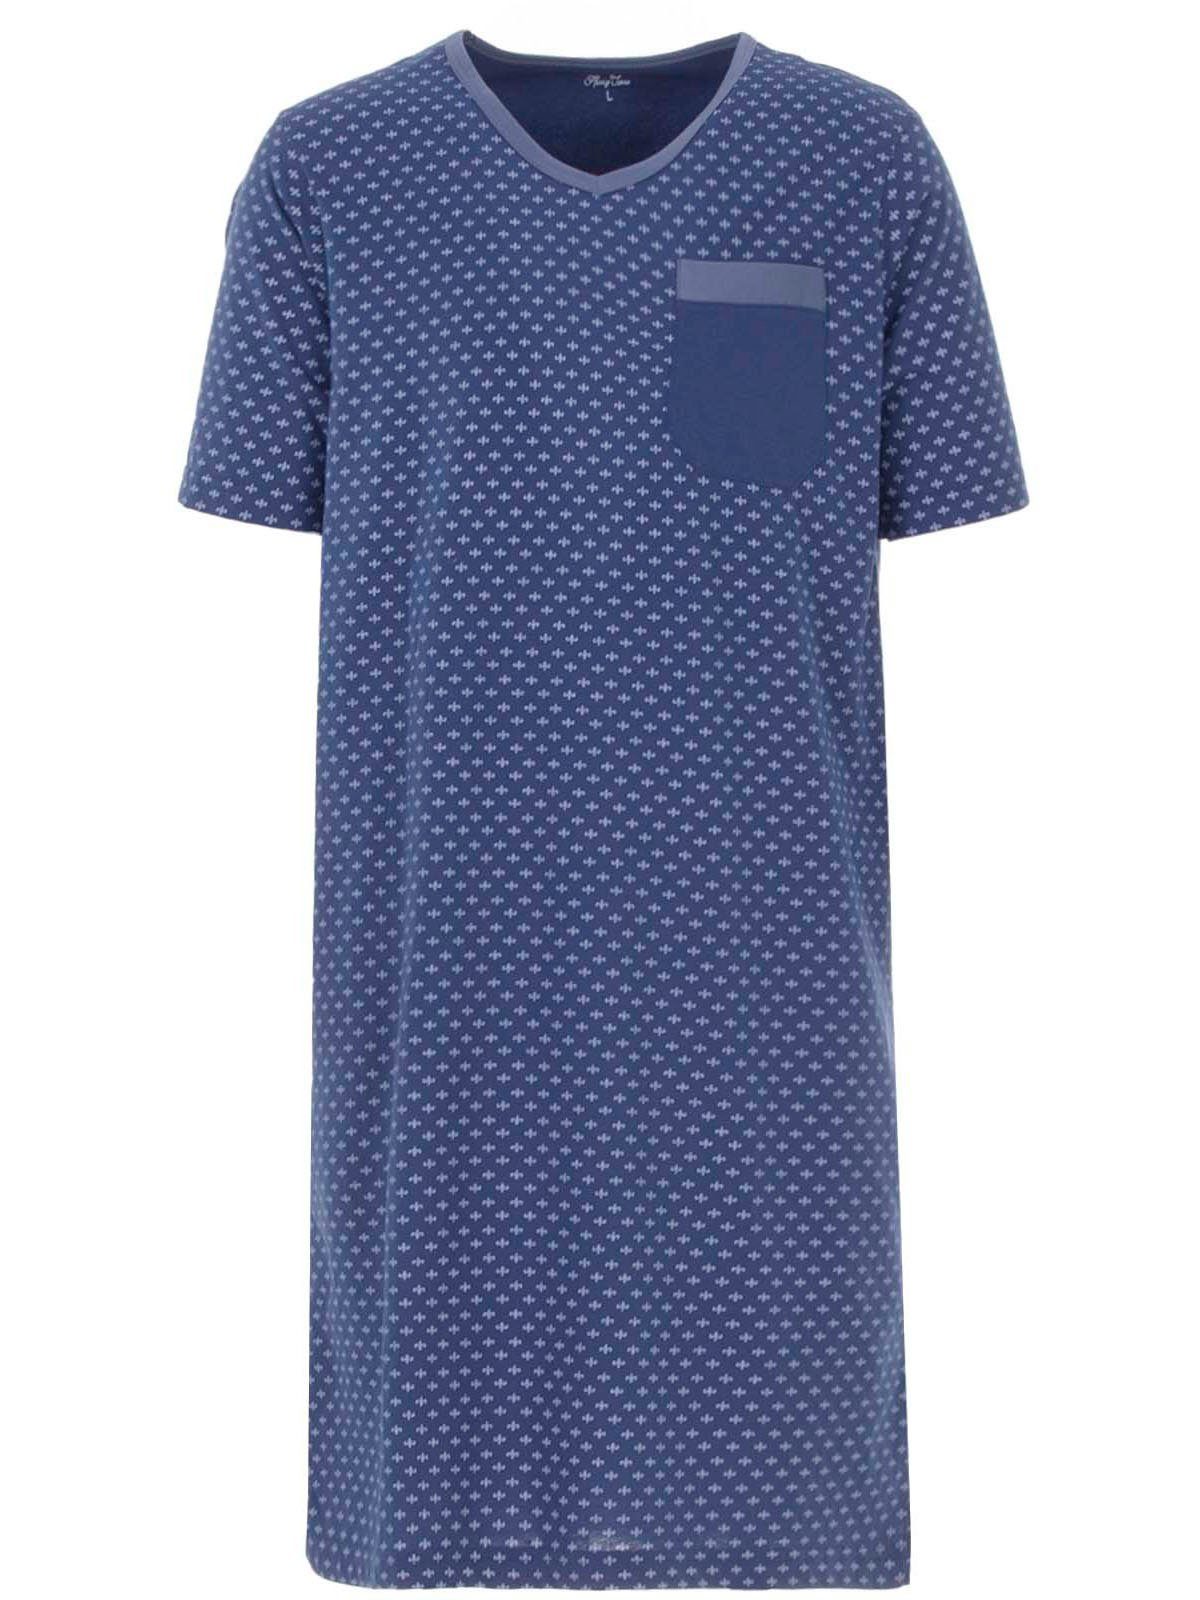 Henry Terre Nachthemd Nachthemd Kurzarm - Lilie